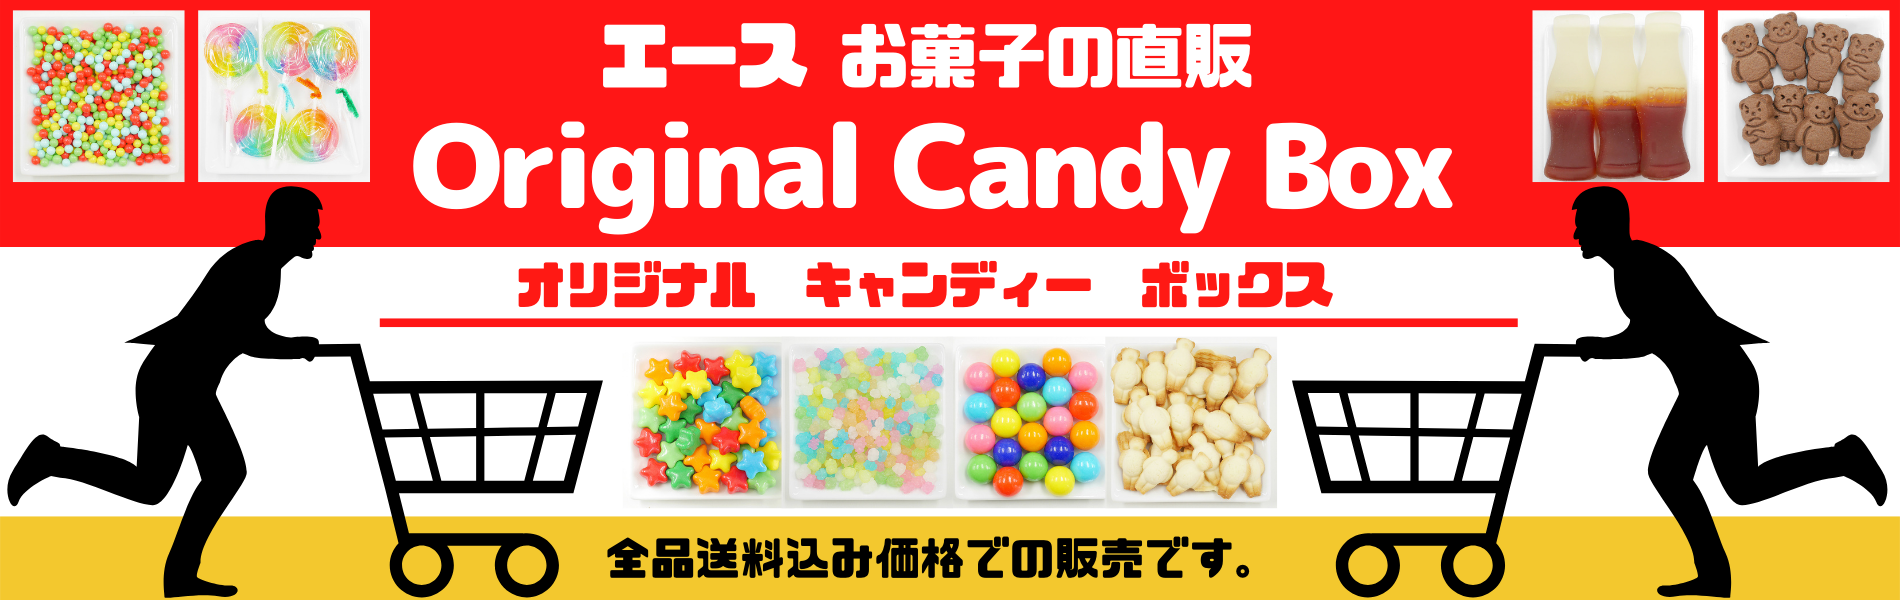 ★お菓子の直売オンライン★オリジナルキャンディーボックス